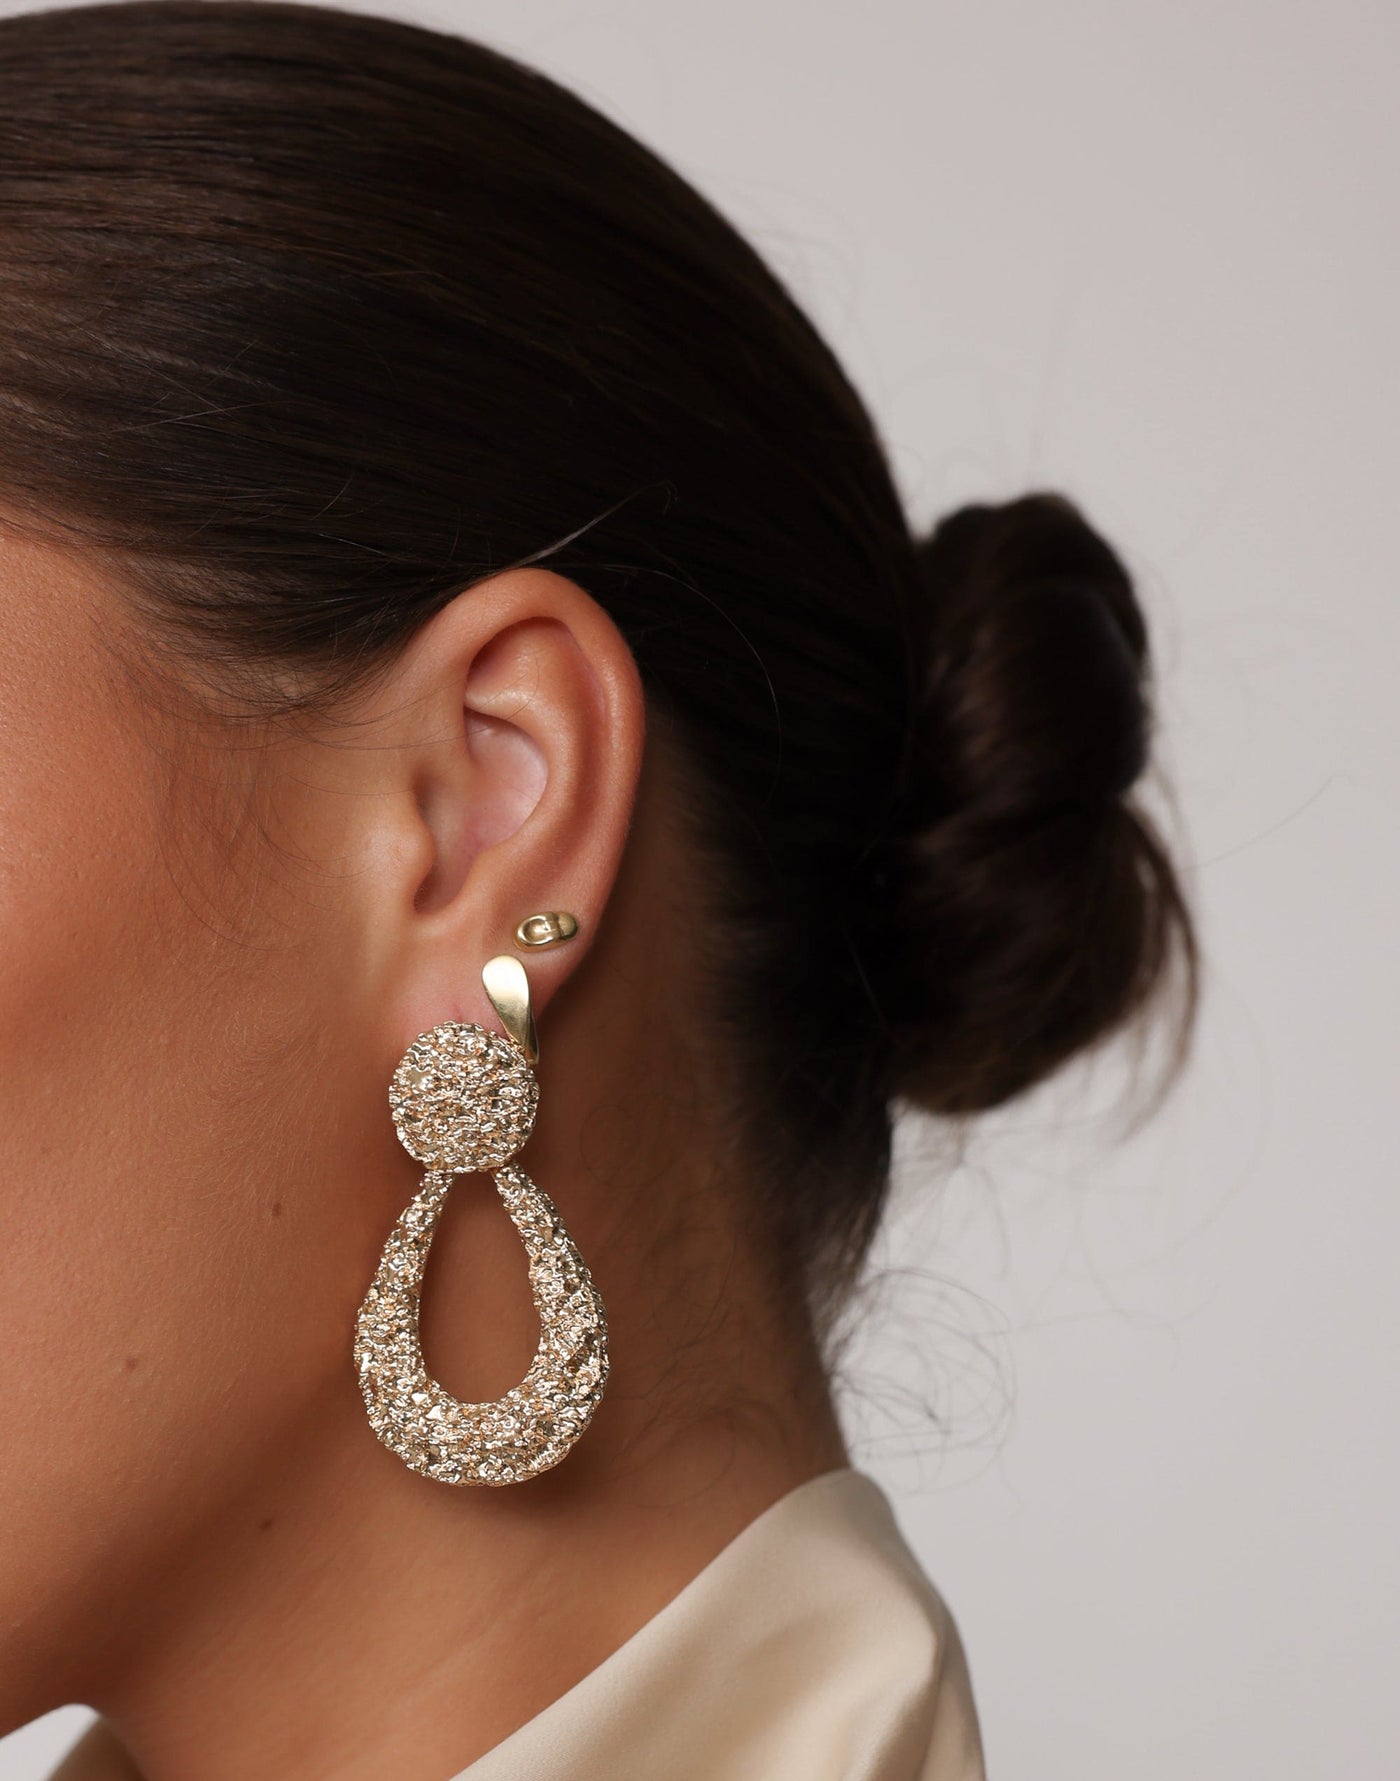 Tihani Earrings (Gold) - Teardrop Shape Statement Earring - Women's Accessories - Charcoal Clothing